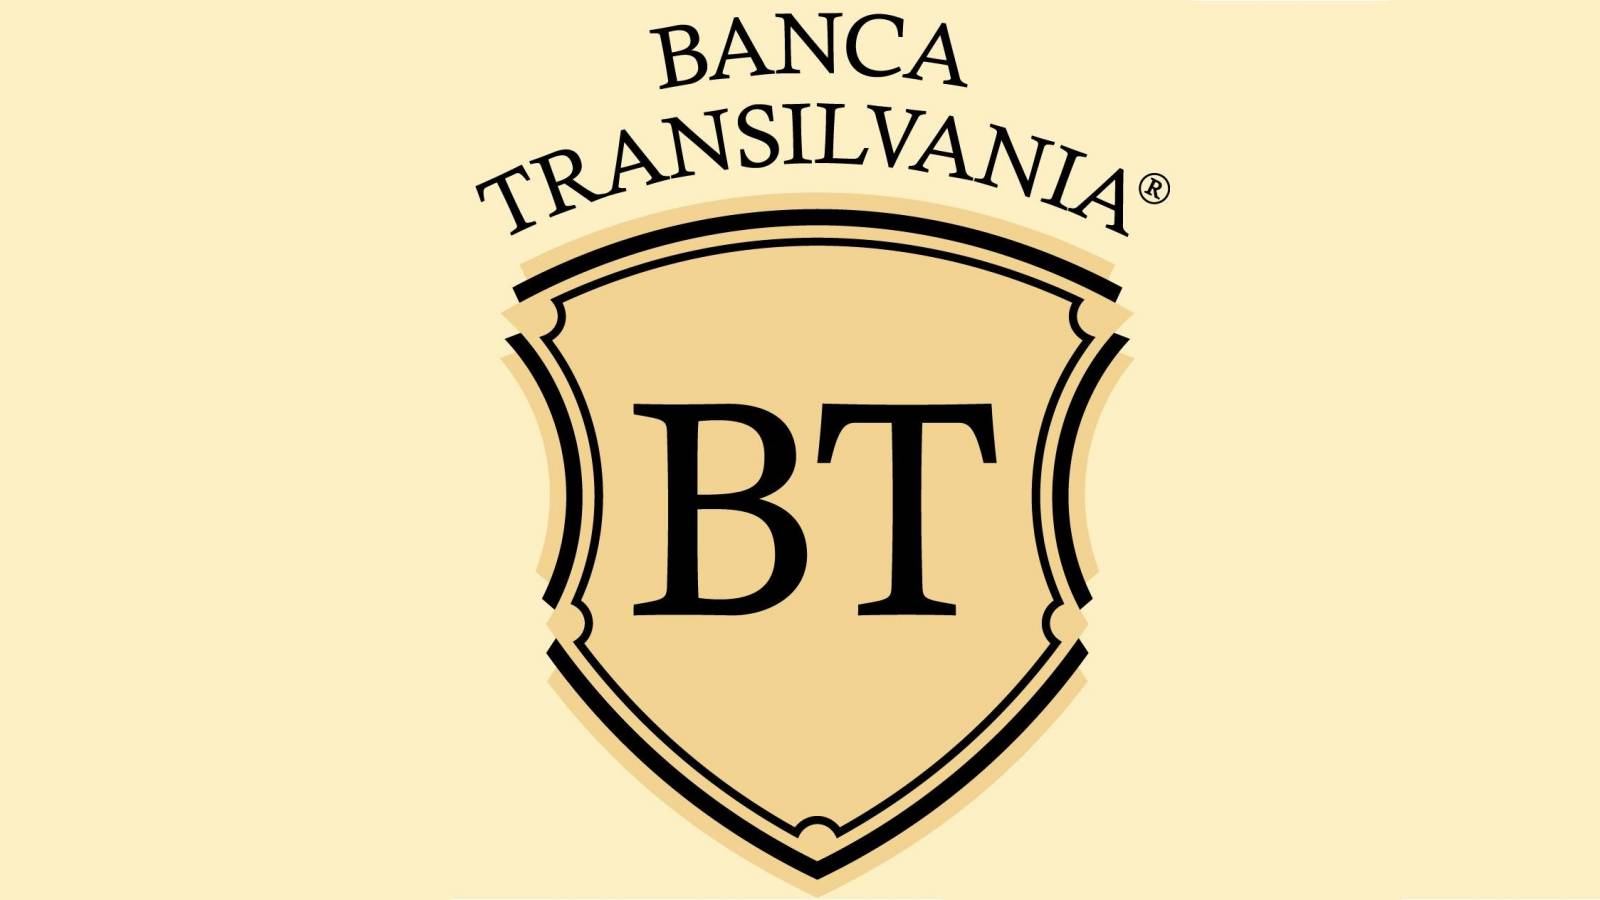 PREMIERE BANCA Transilvania officieel aangekondigd aan alle Roemeense klanten